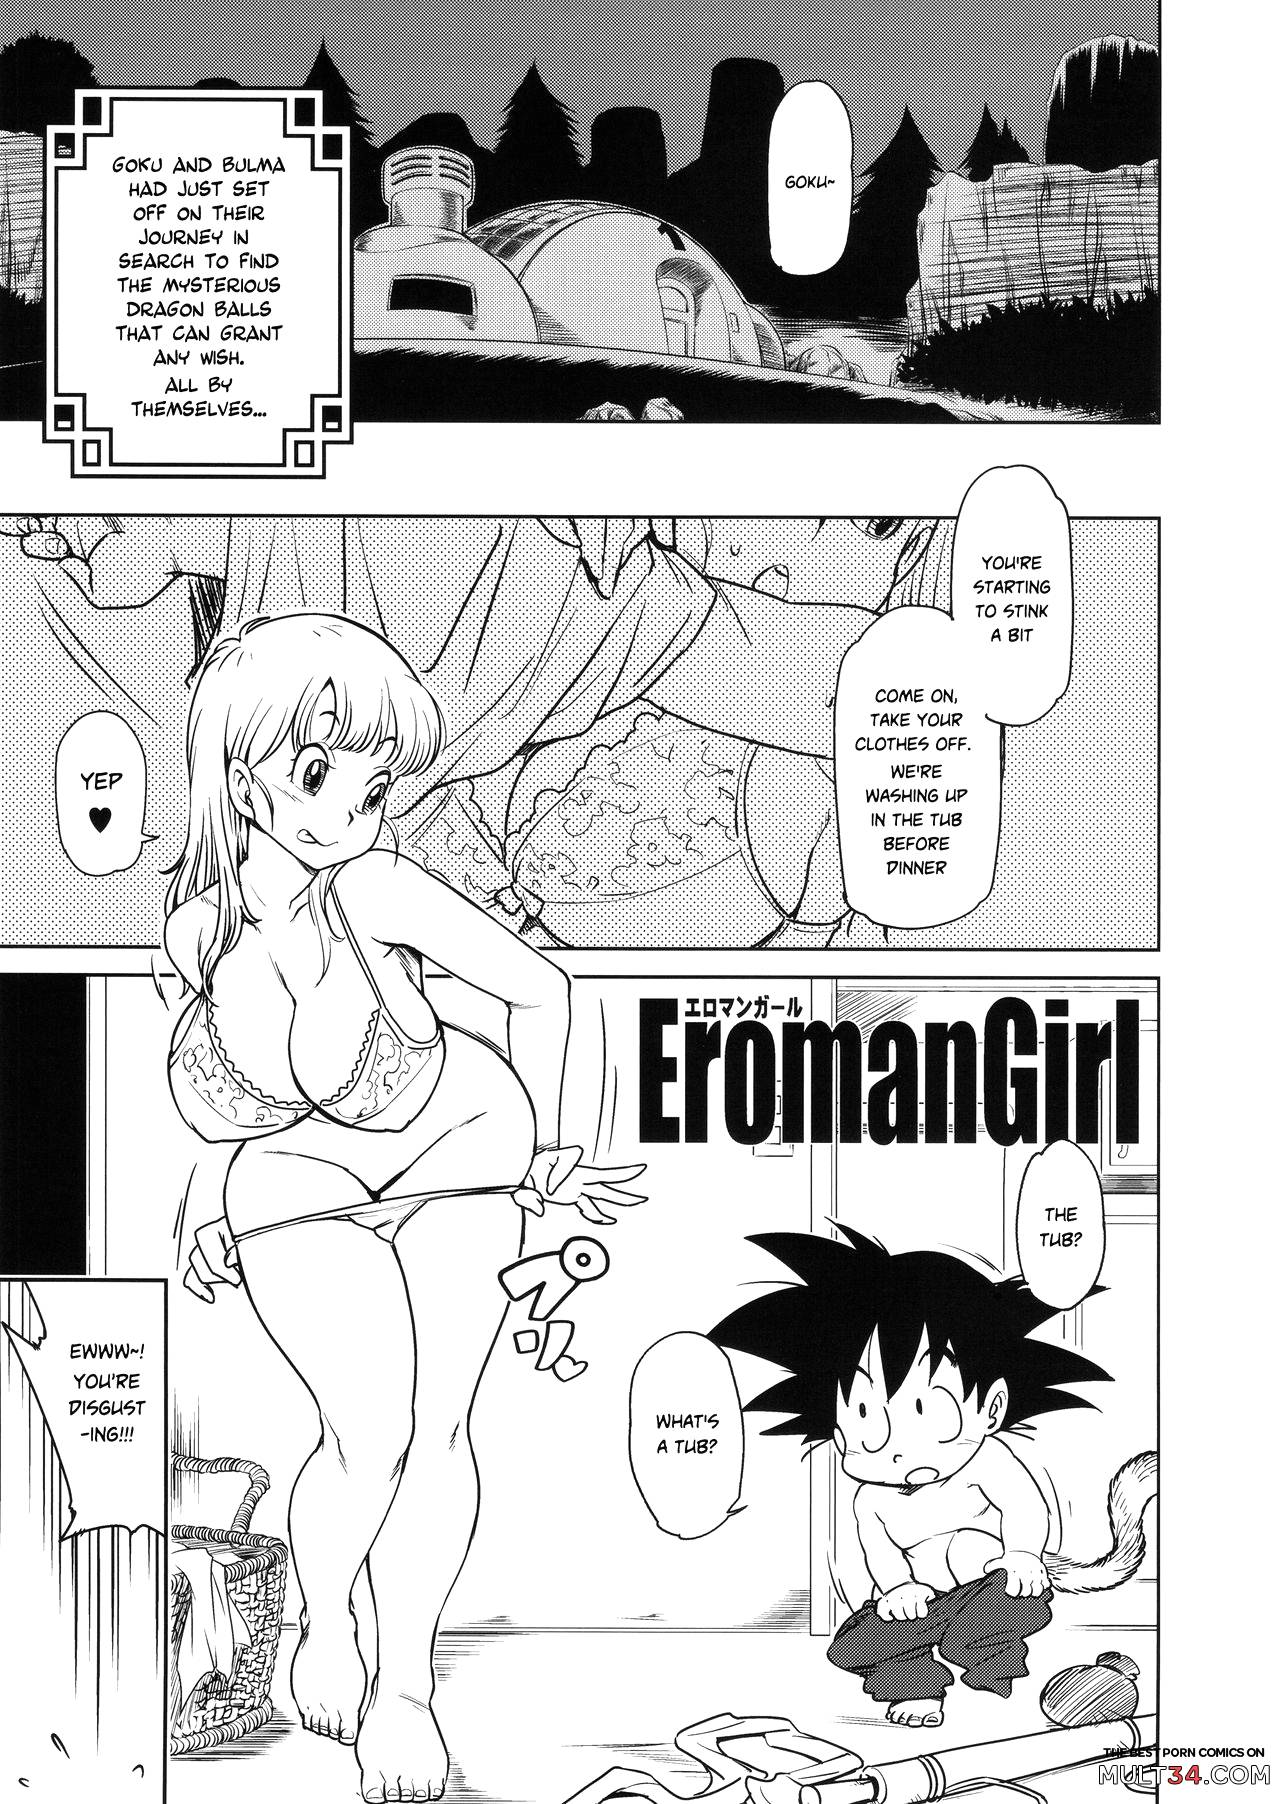 Dragon ball porn comics of bulma and goku